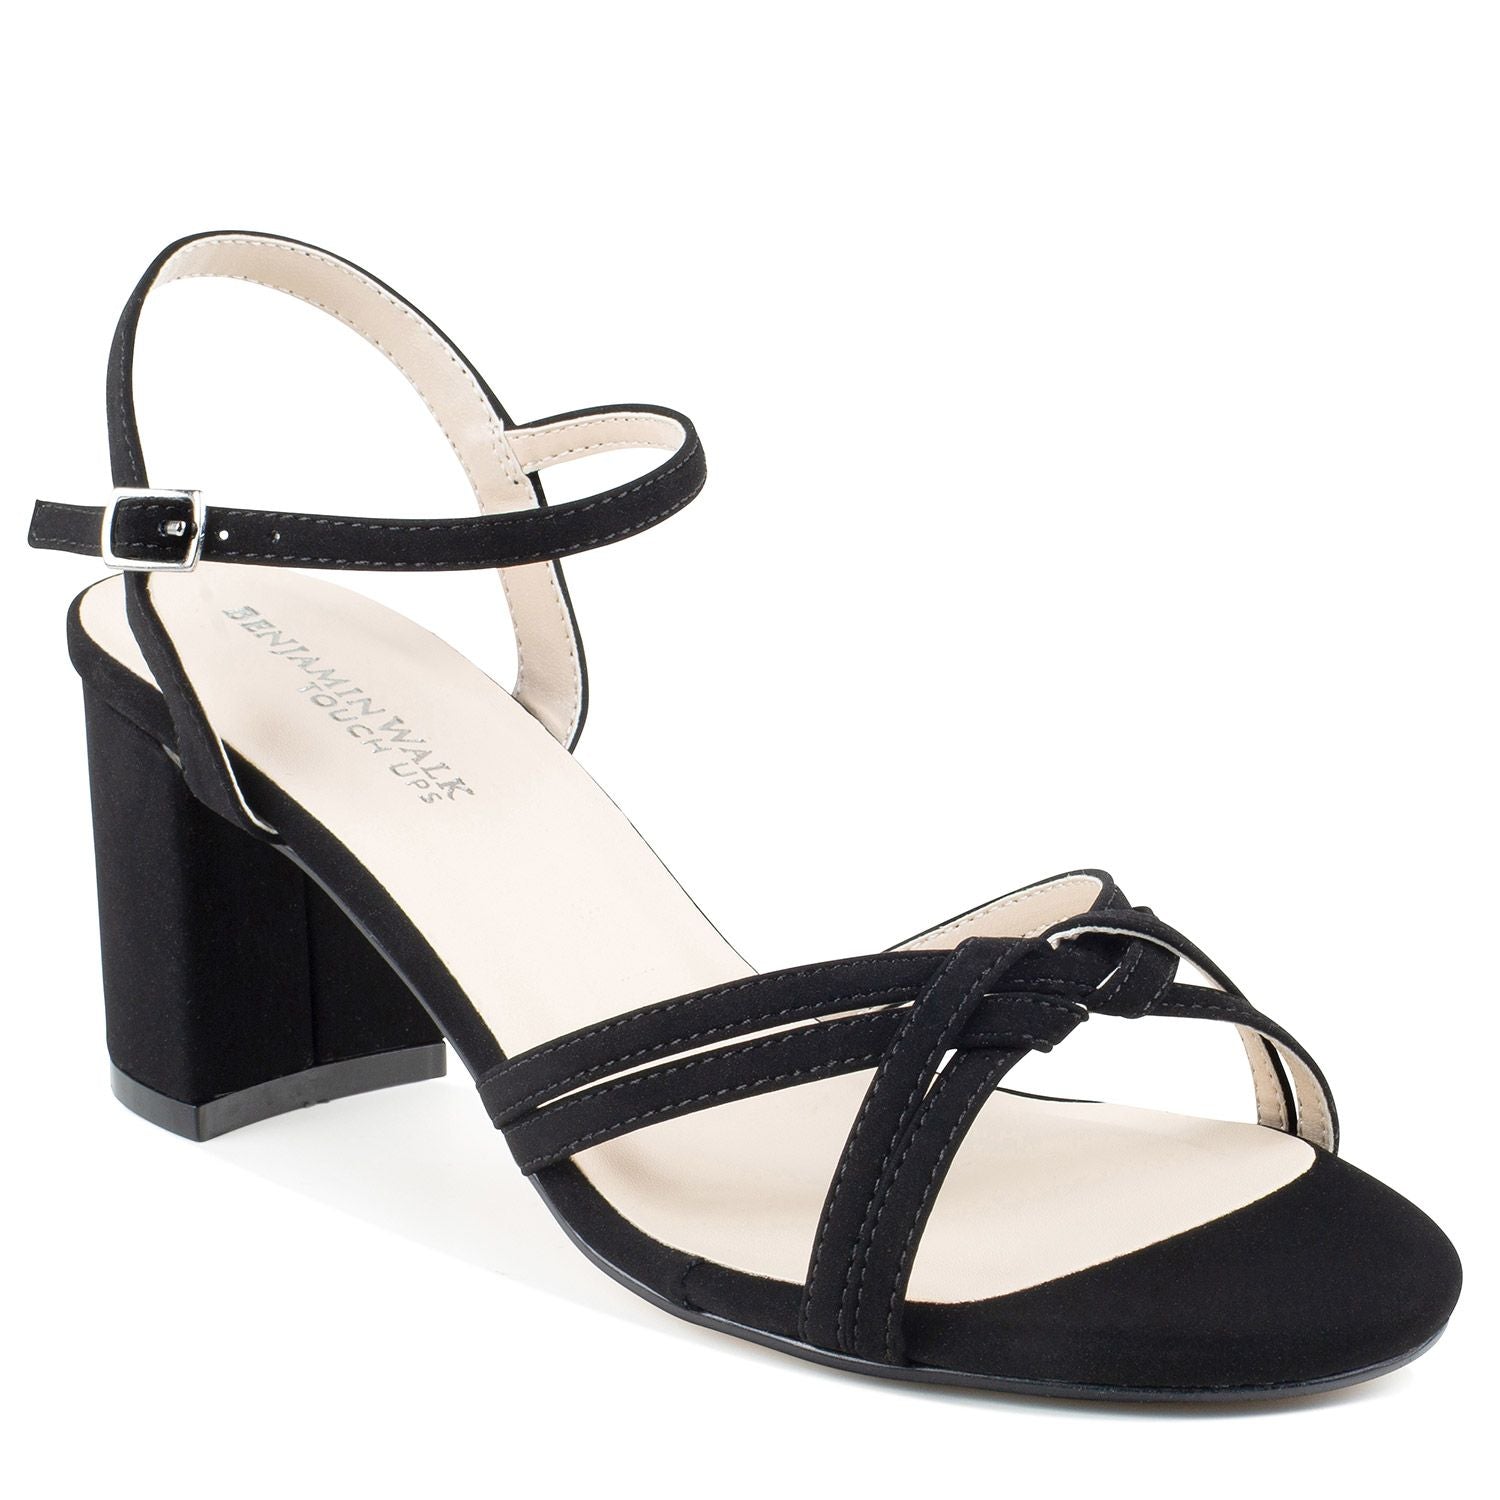  Black glitter heel with 2.25 block heel